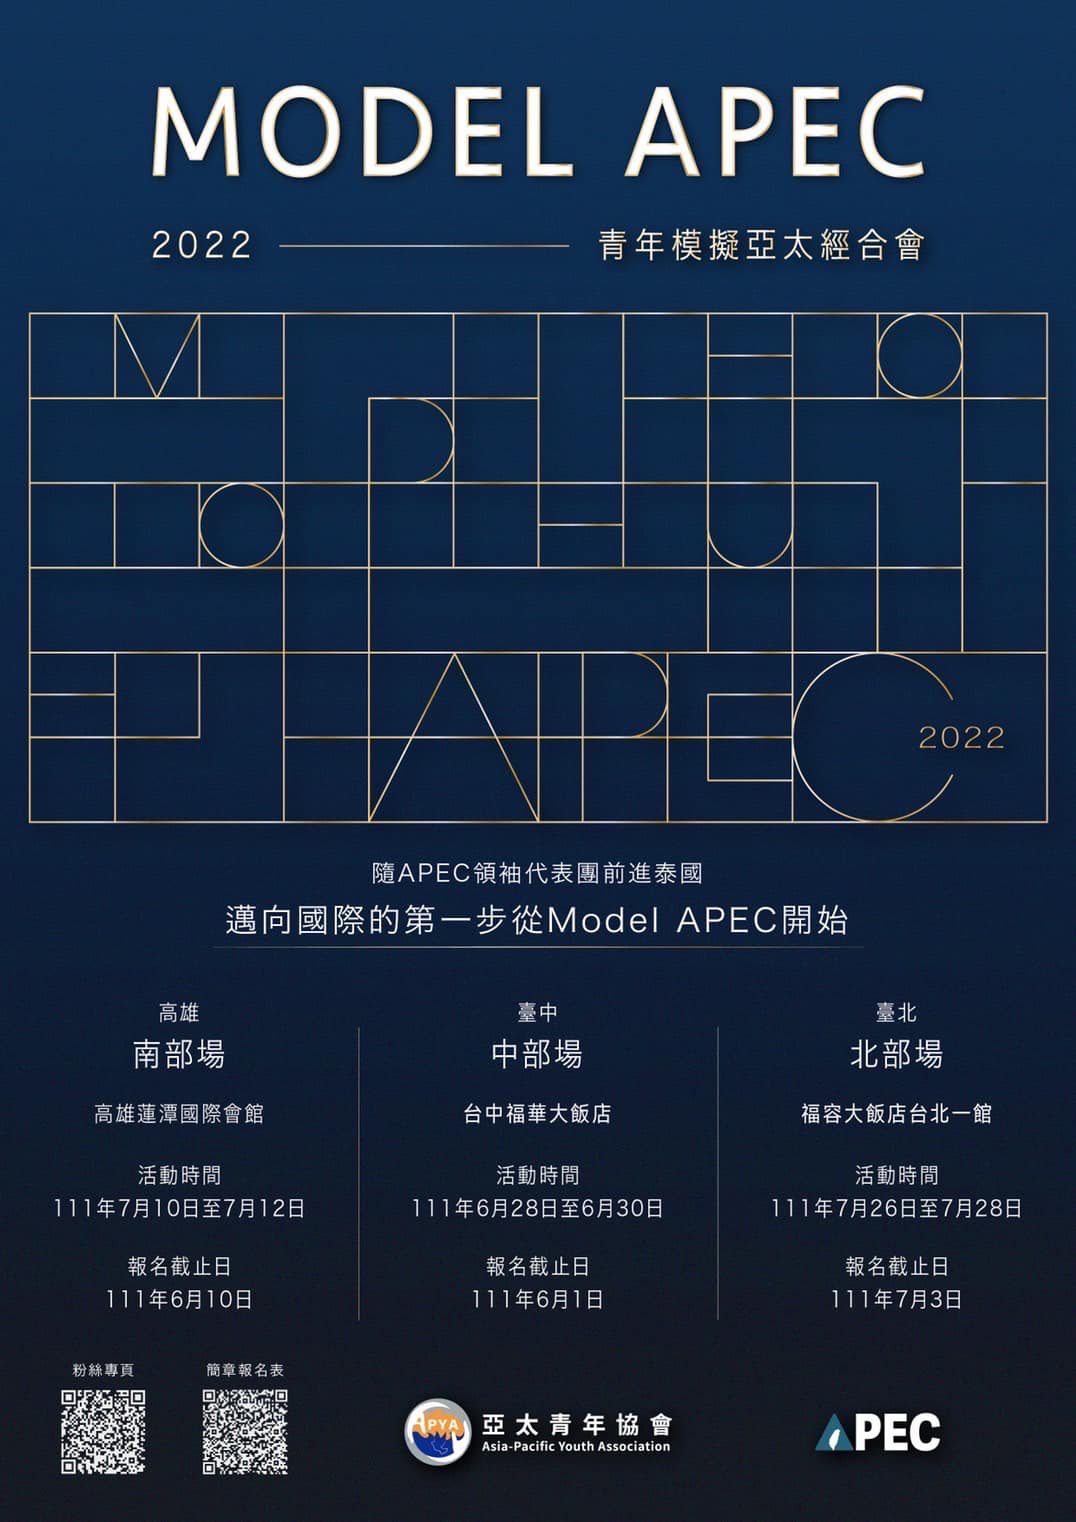 2022年 Model APEC（高雄場延期至7/10-7/12）